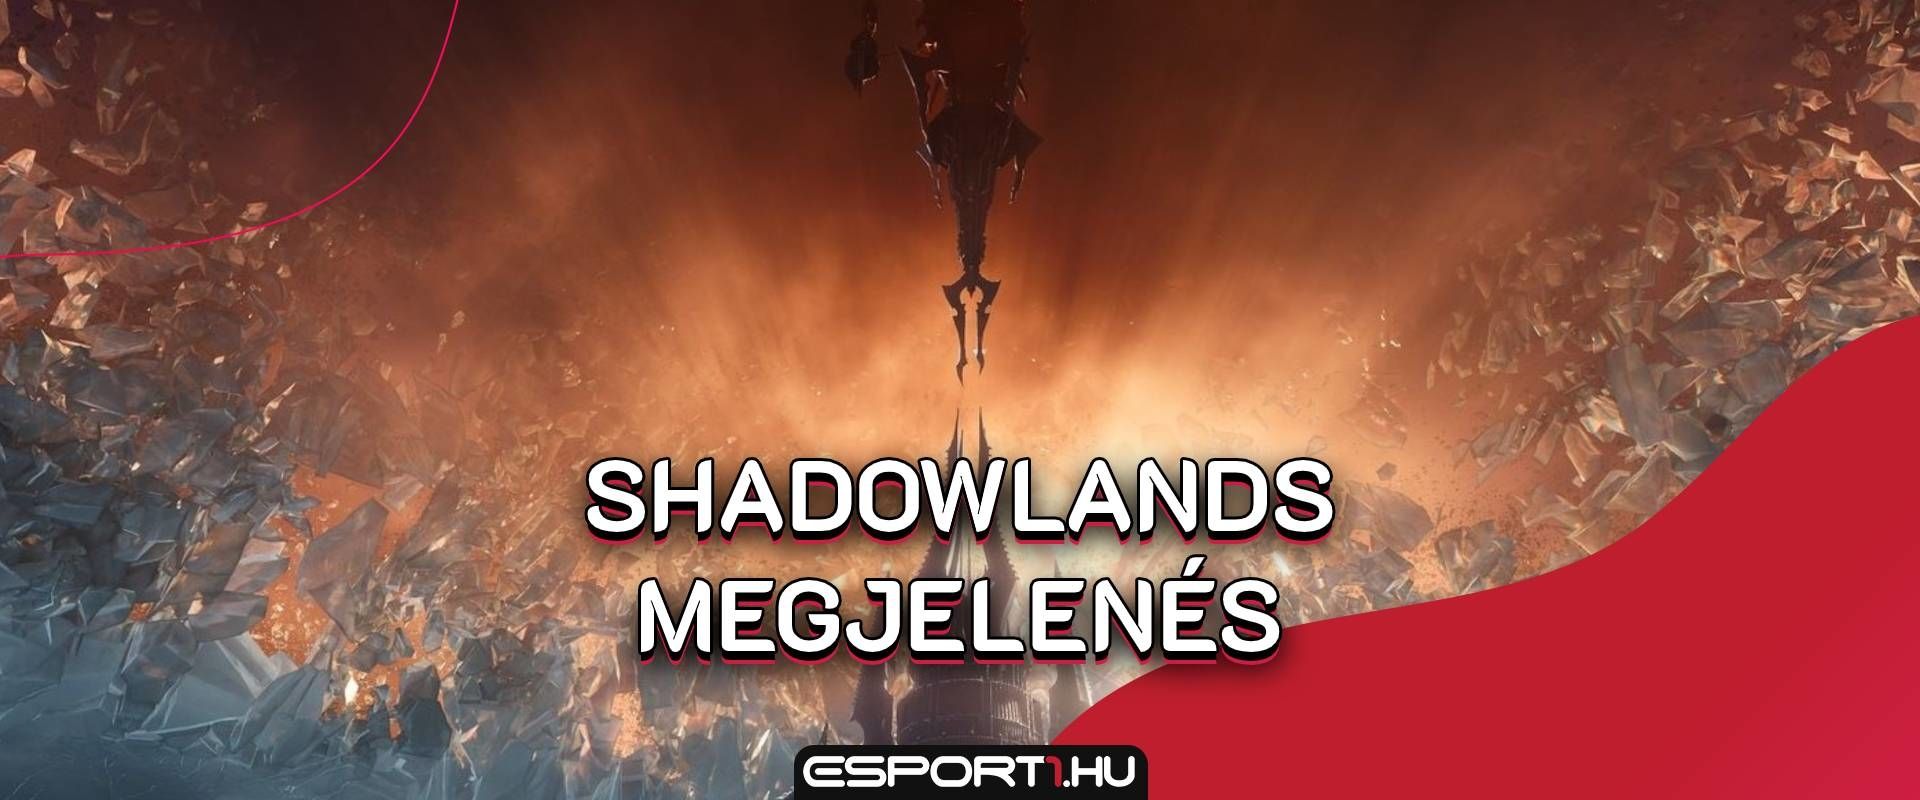 Megkapta új megjelenési dátumát a World of Warcraft: Shadowlands